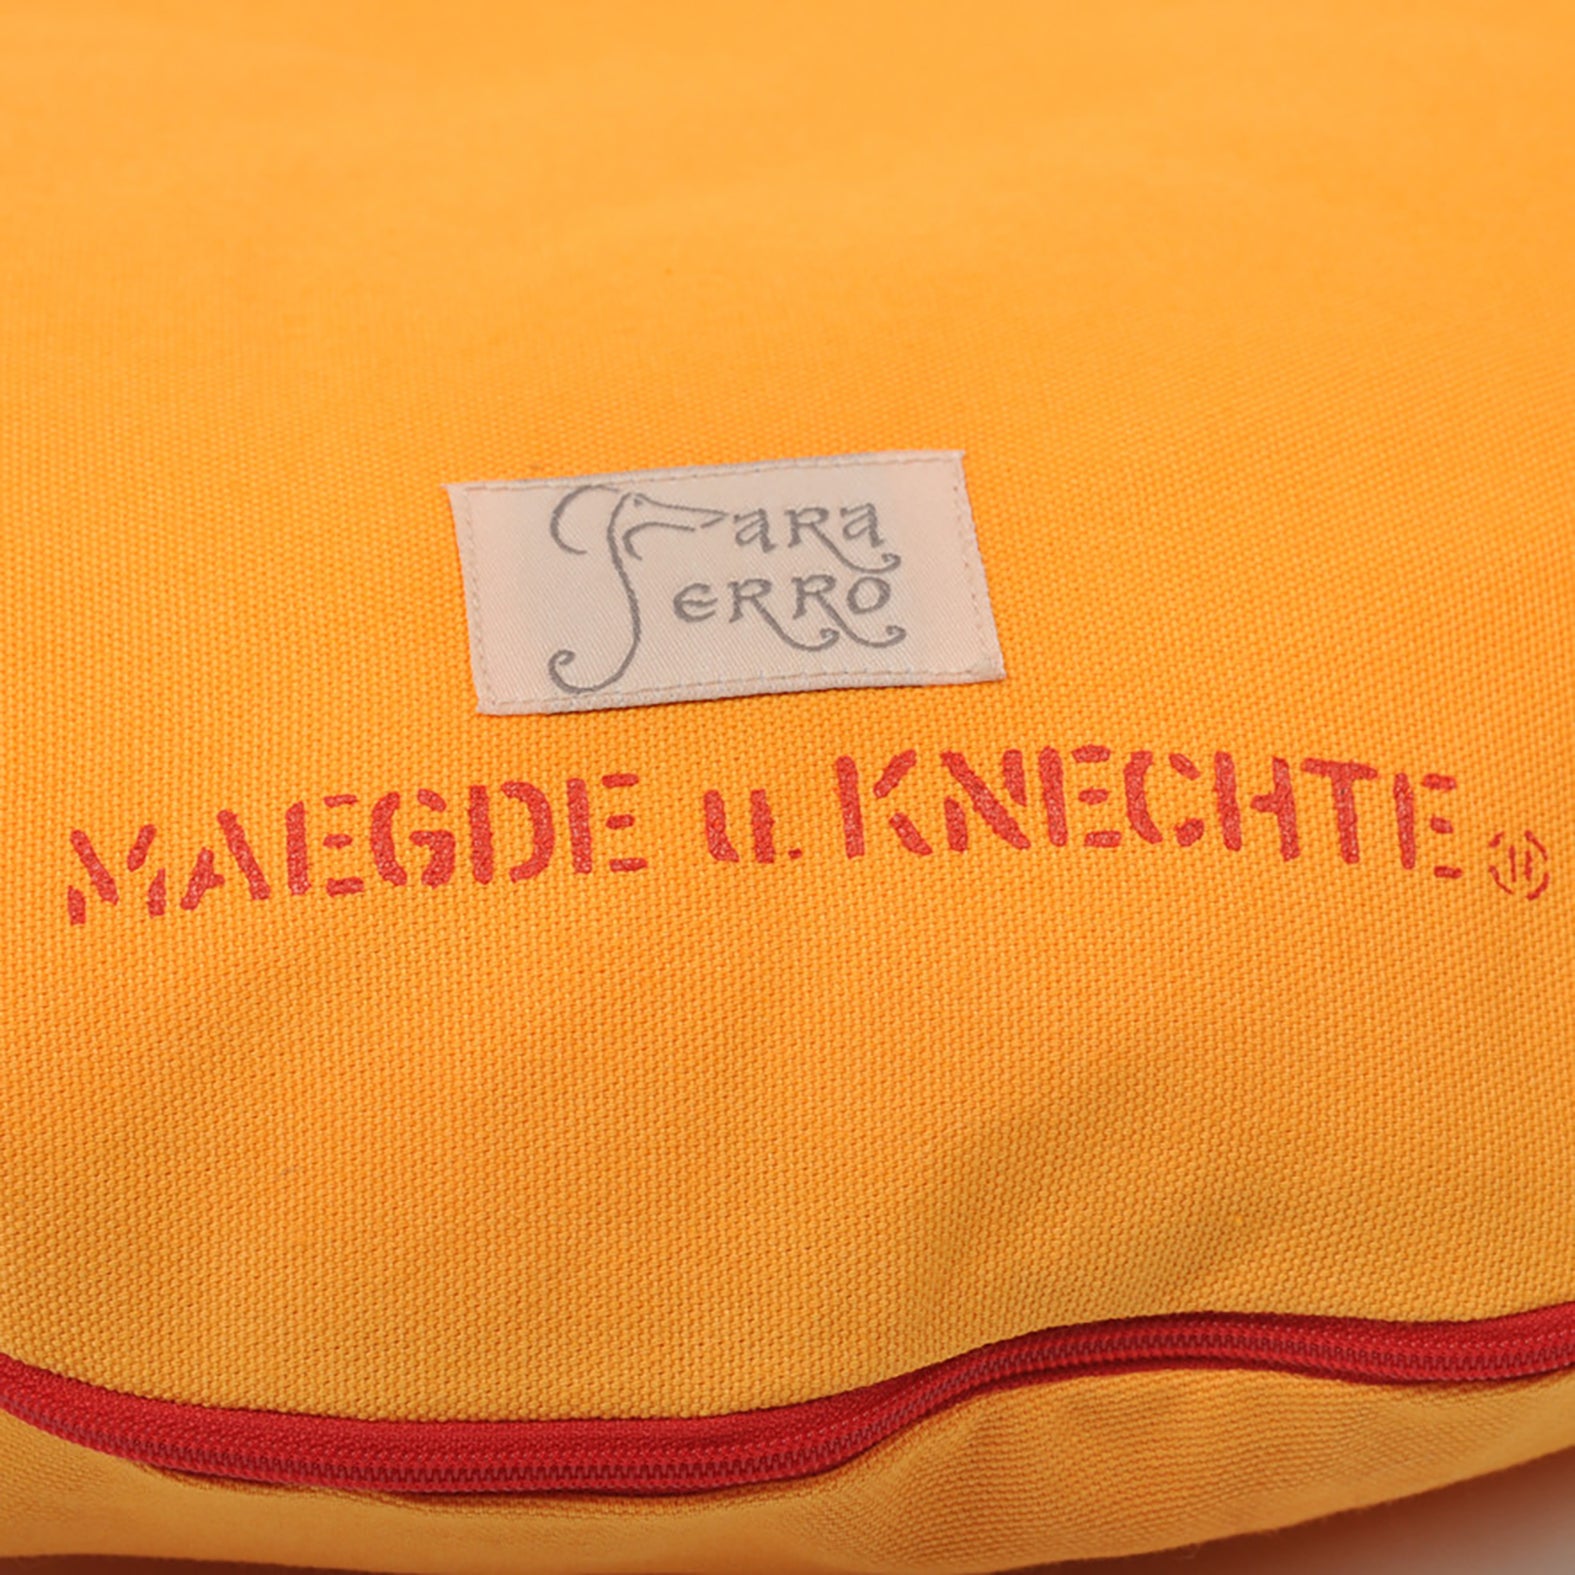 Rundes Hundekissen aus Baumwolle in Orange mit roter Schrift Ich darf das von Maegde u. Knechte für kleine Hunde